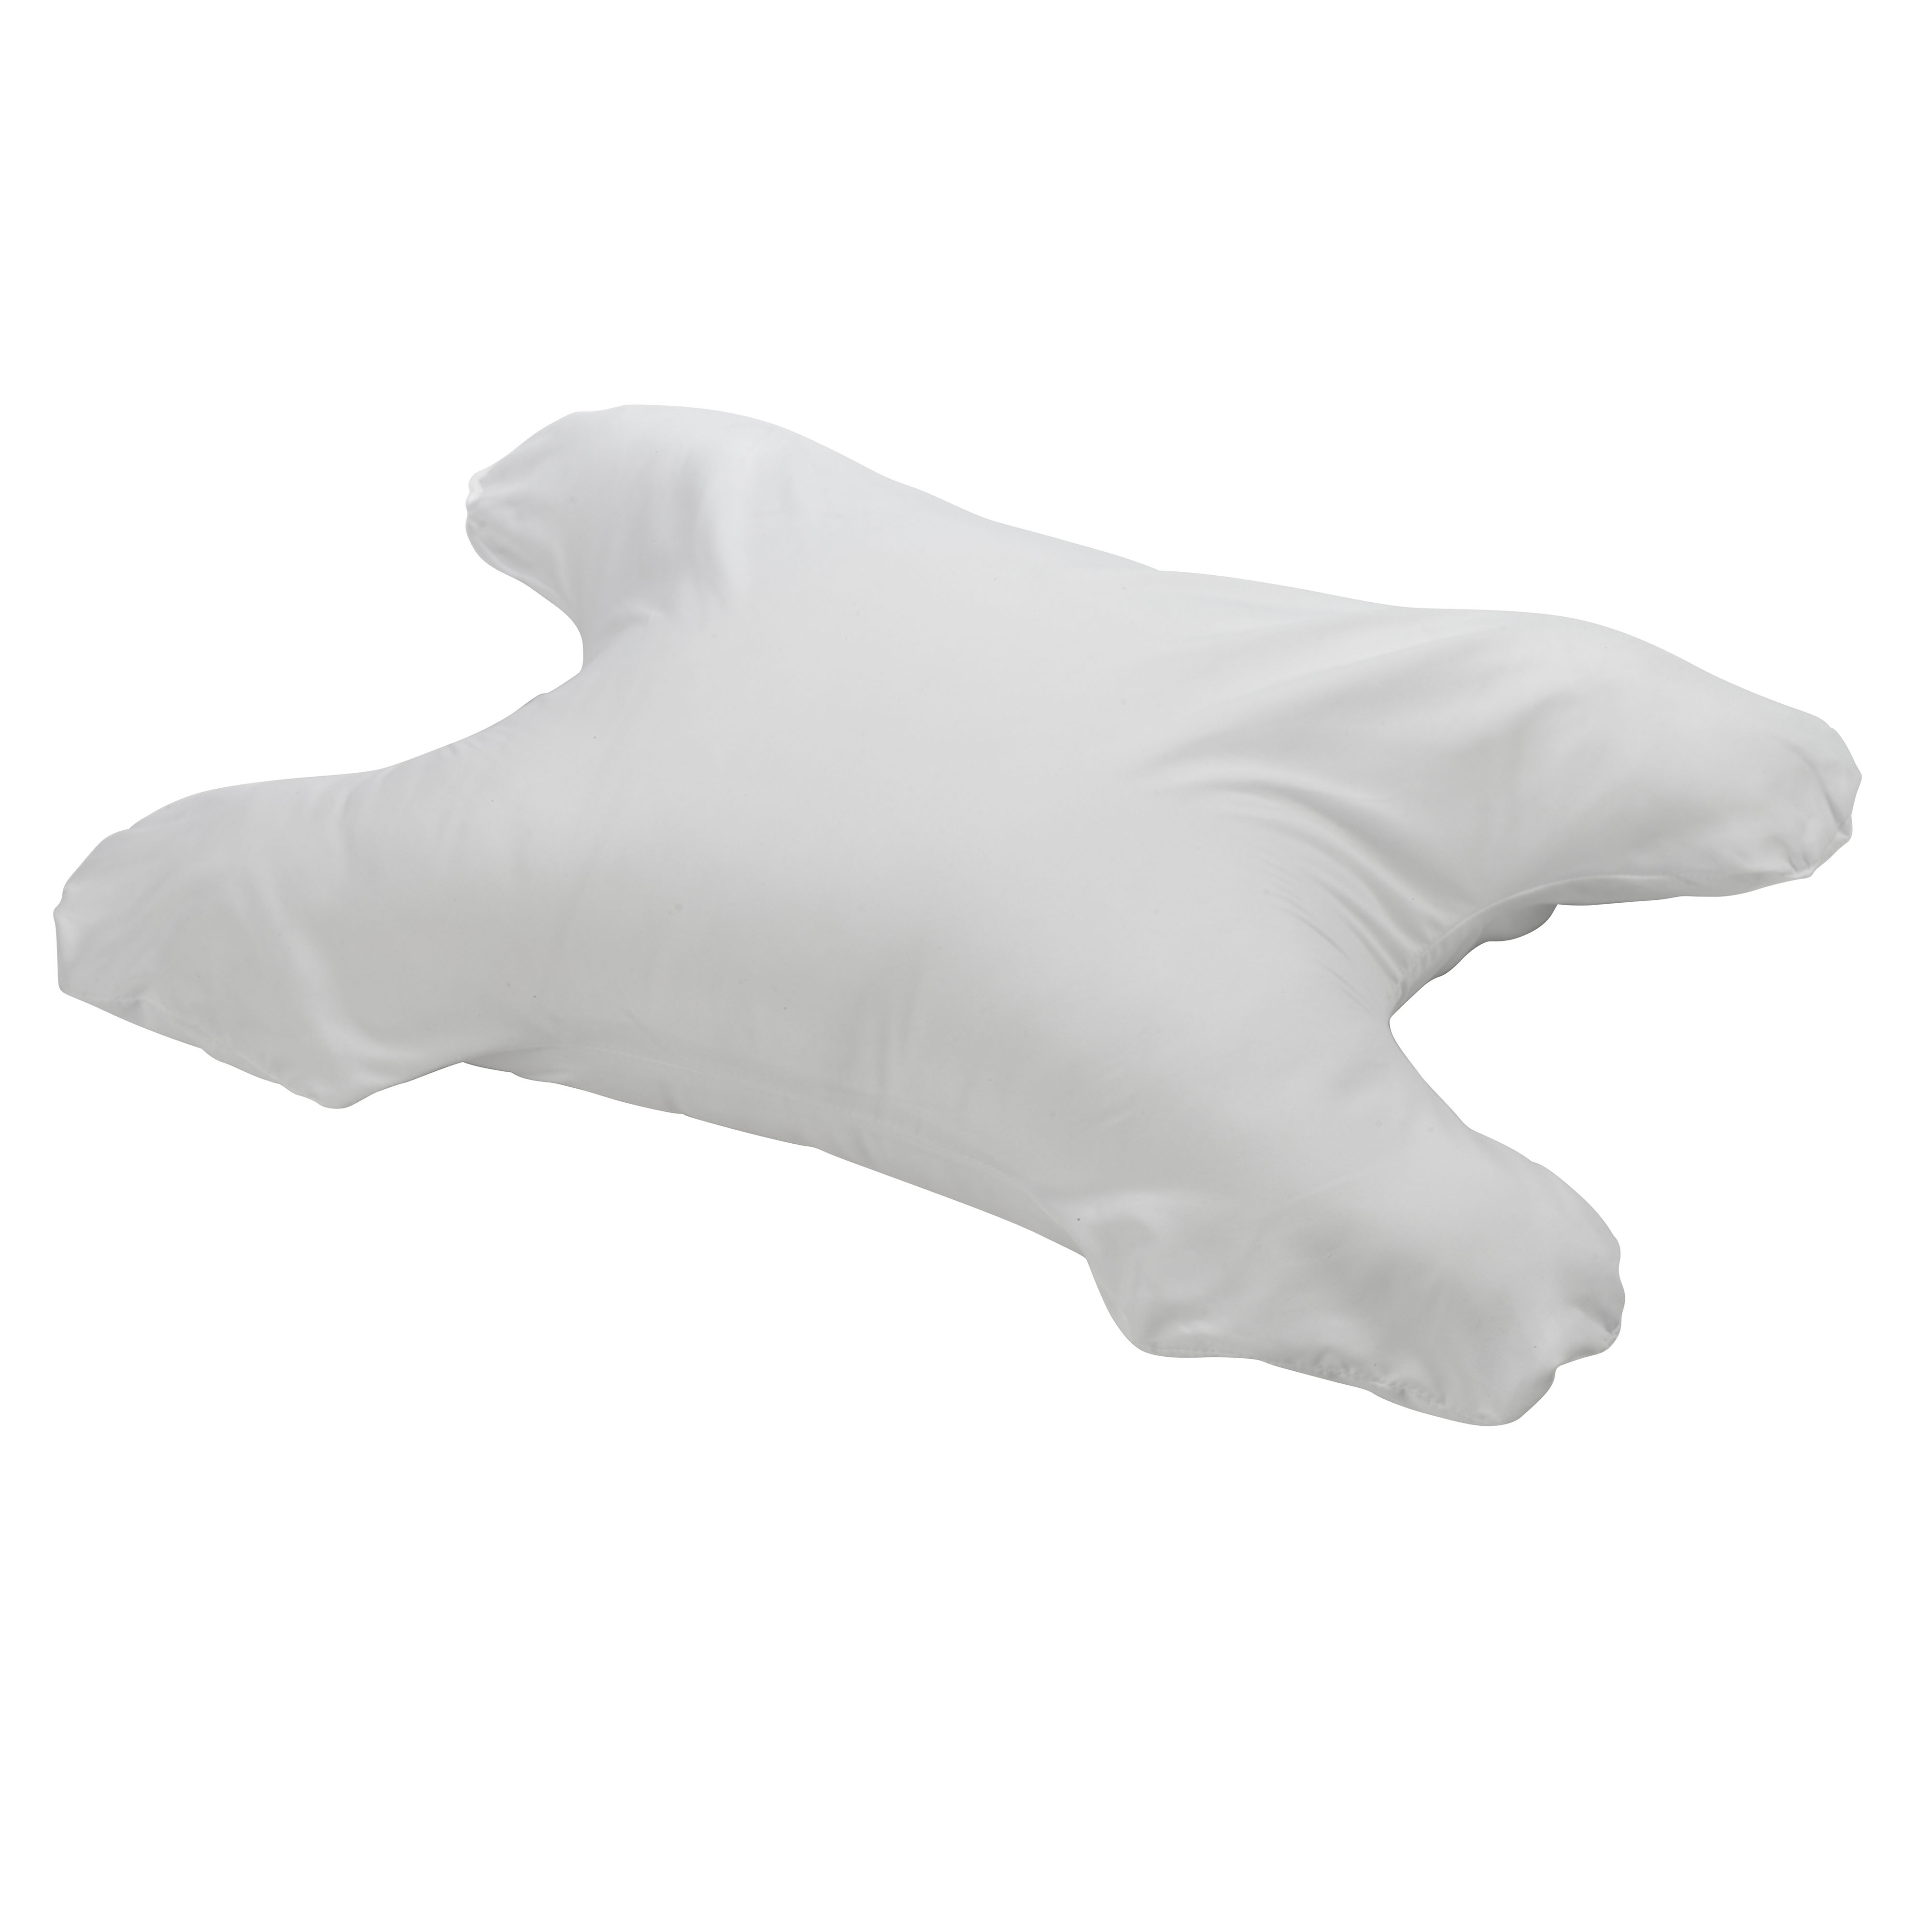 IntelliPAP Sleep Aid CPAP Pillow